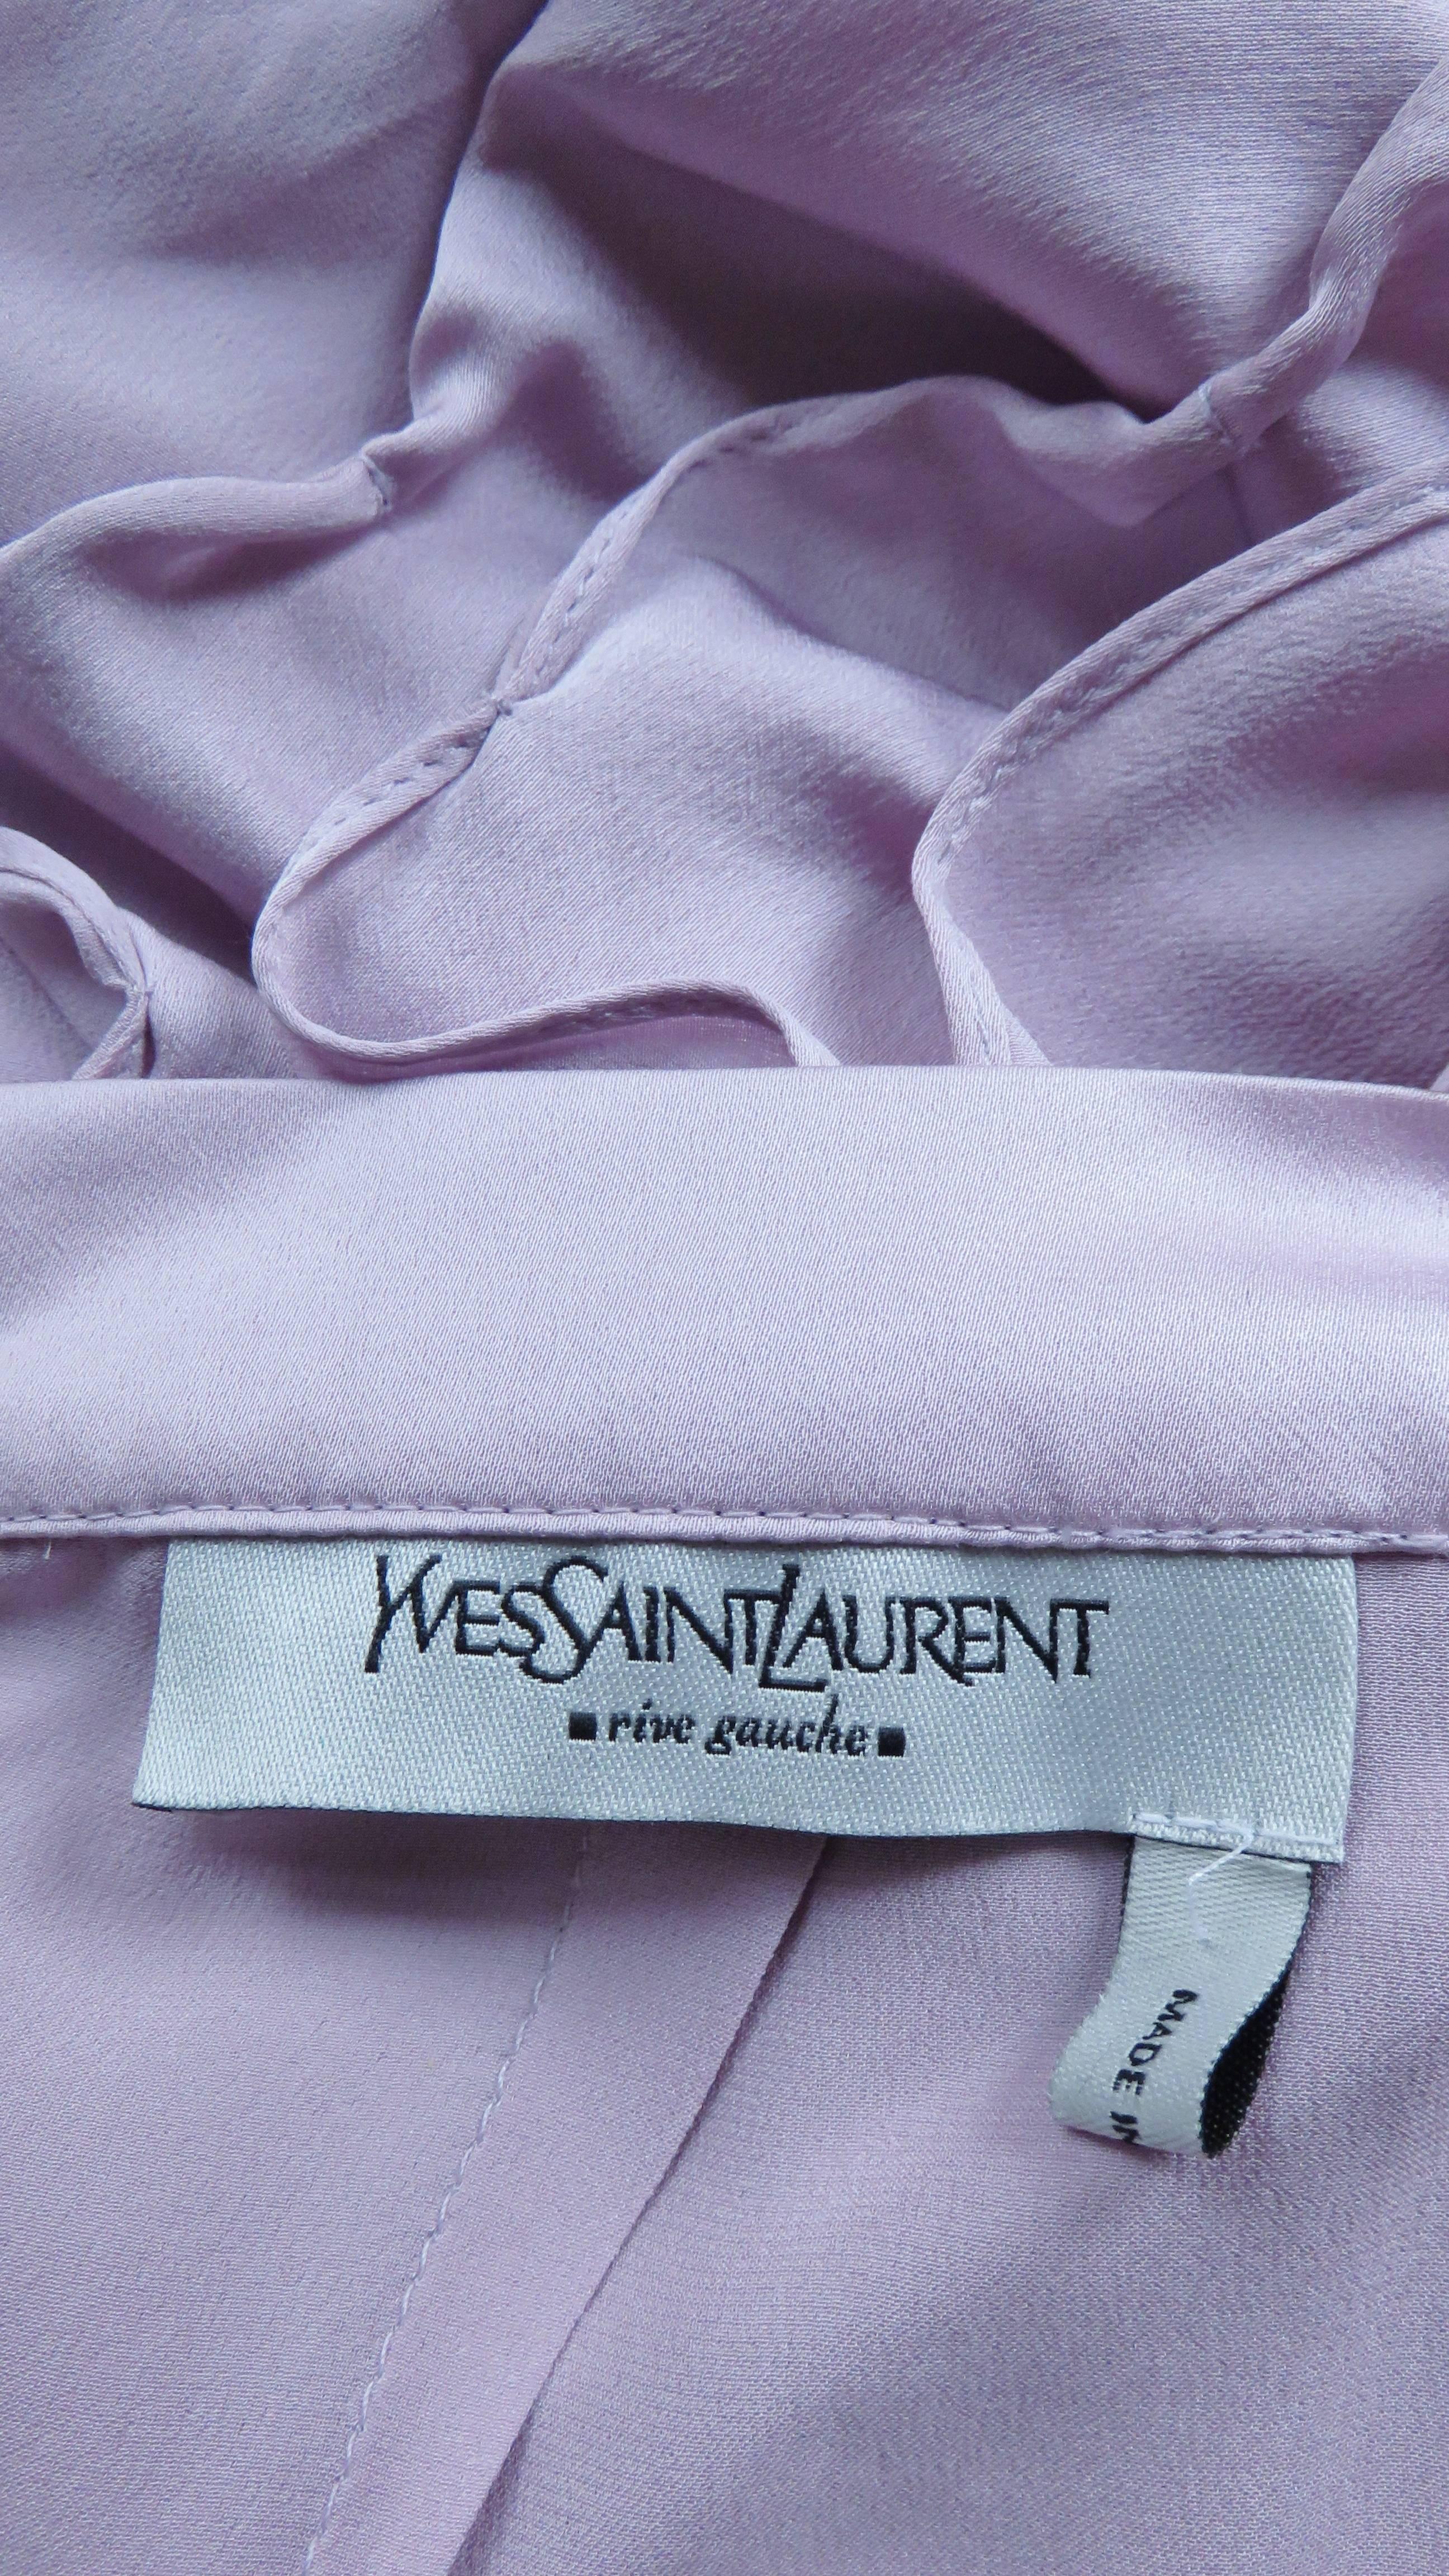  Tom Ford for Yves Saint Laurent YSL S/S 2003 Skirt For Sale 4